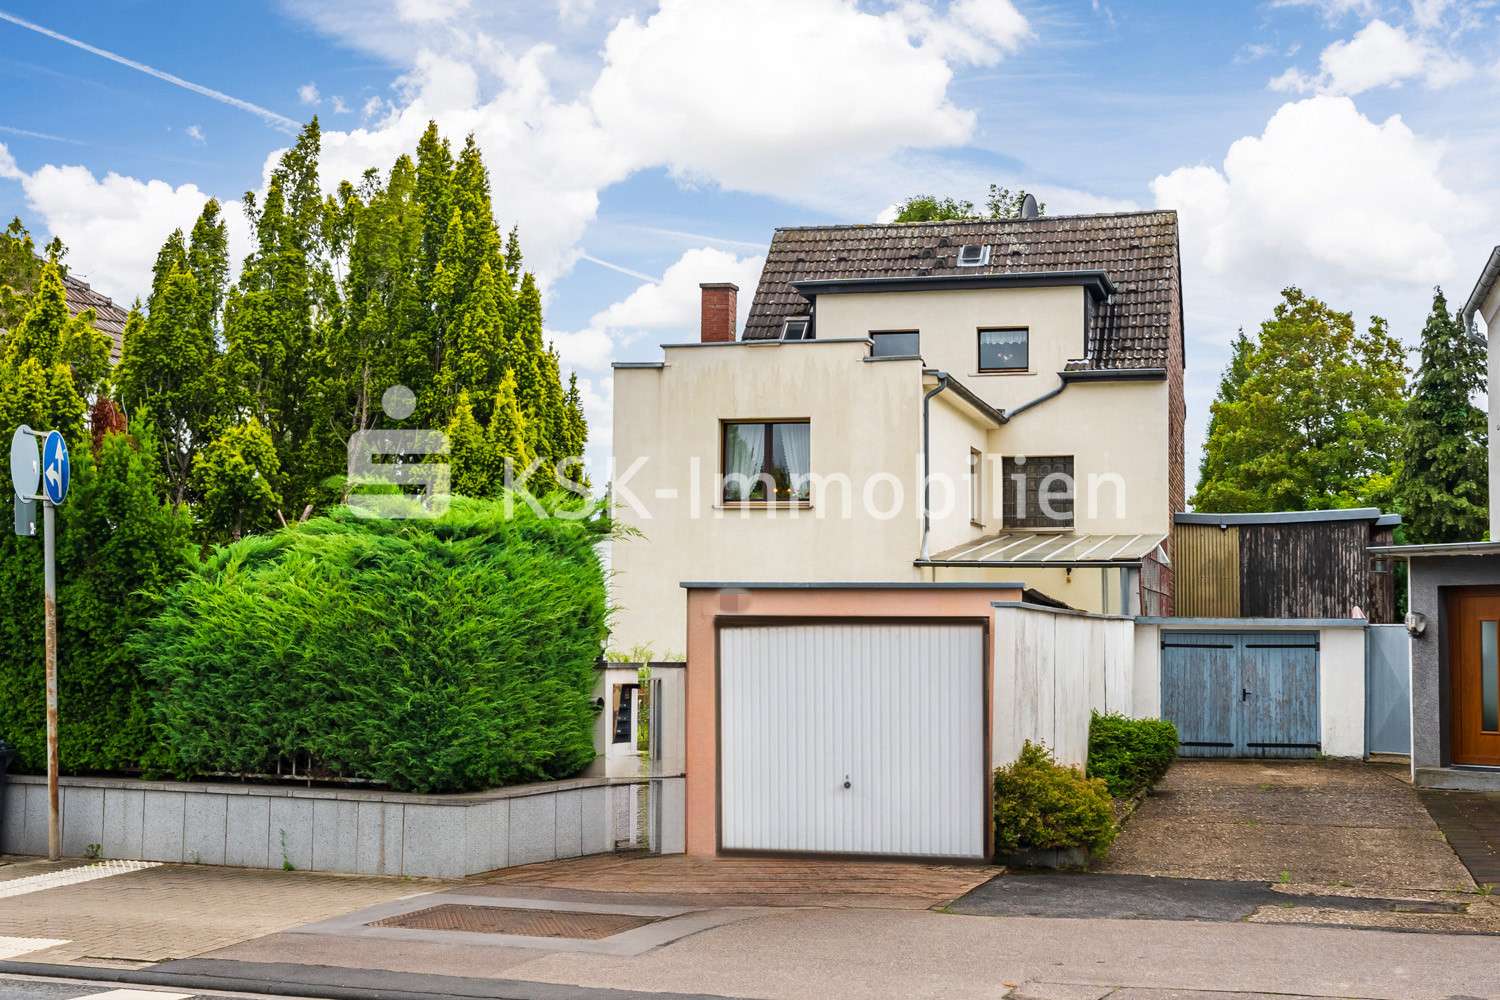 122056 Außenansicht - Einfamilienhaus in 50997 Köln mit 173m² kaufen